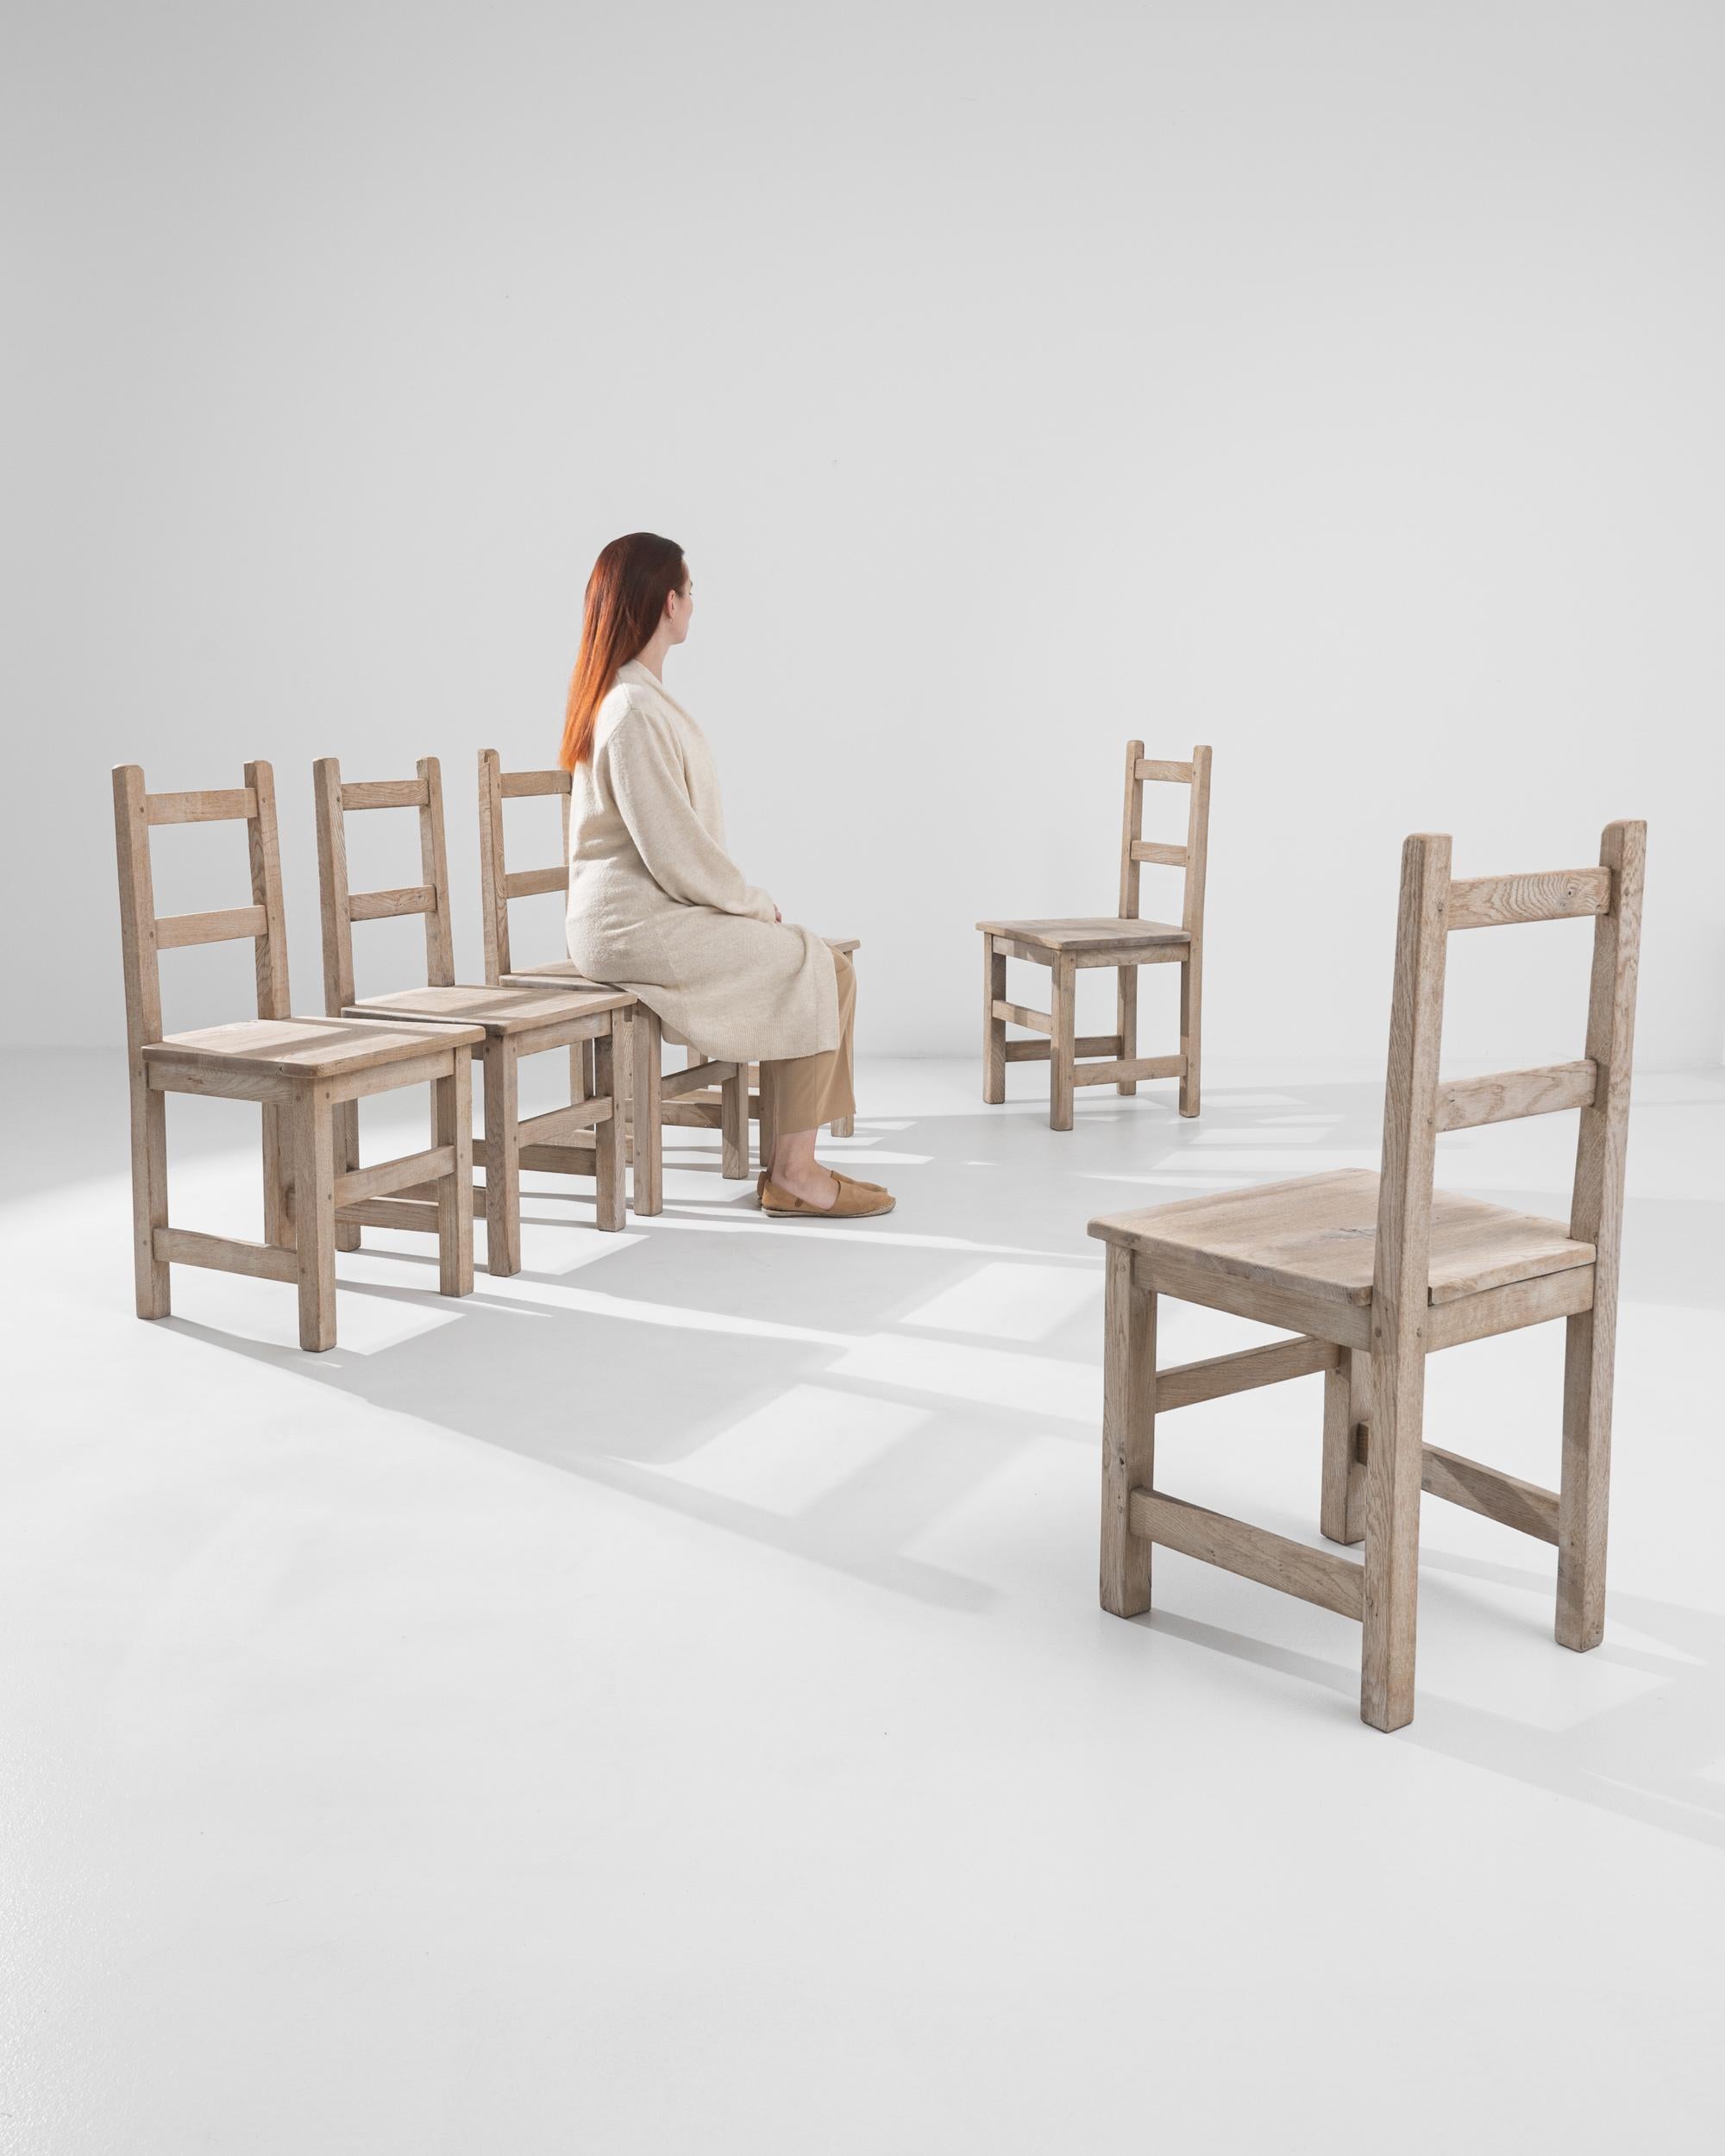 Découvrez la sophistication rustique avec cet ensemble de six chaises de salle à manger belges du XXe siècle, fabriquées en chêne blanchi. Chaque chaise est dotée d'un cadre solide et robuste et d'une finition naturelle qui met en valeur le grain et